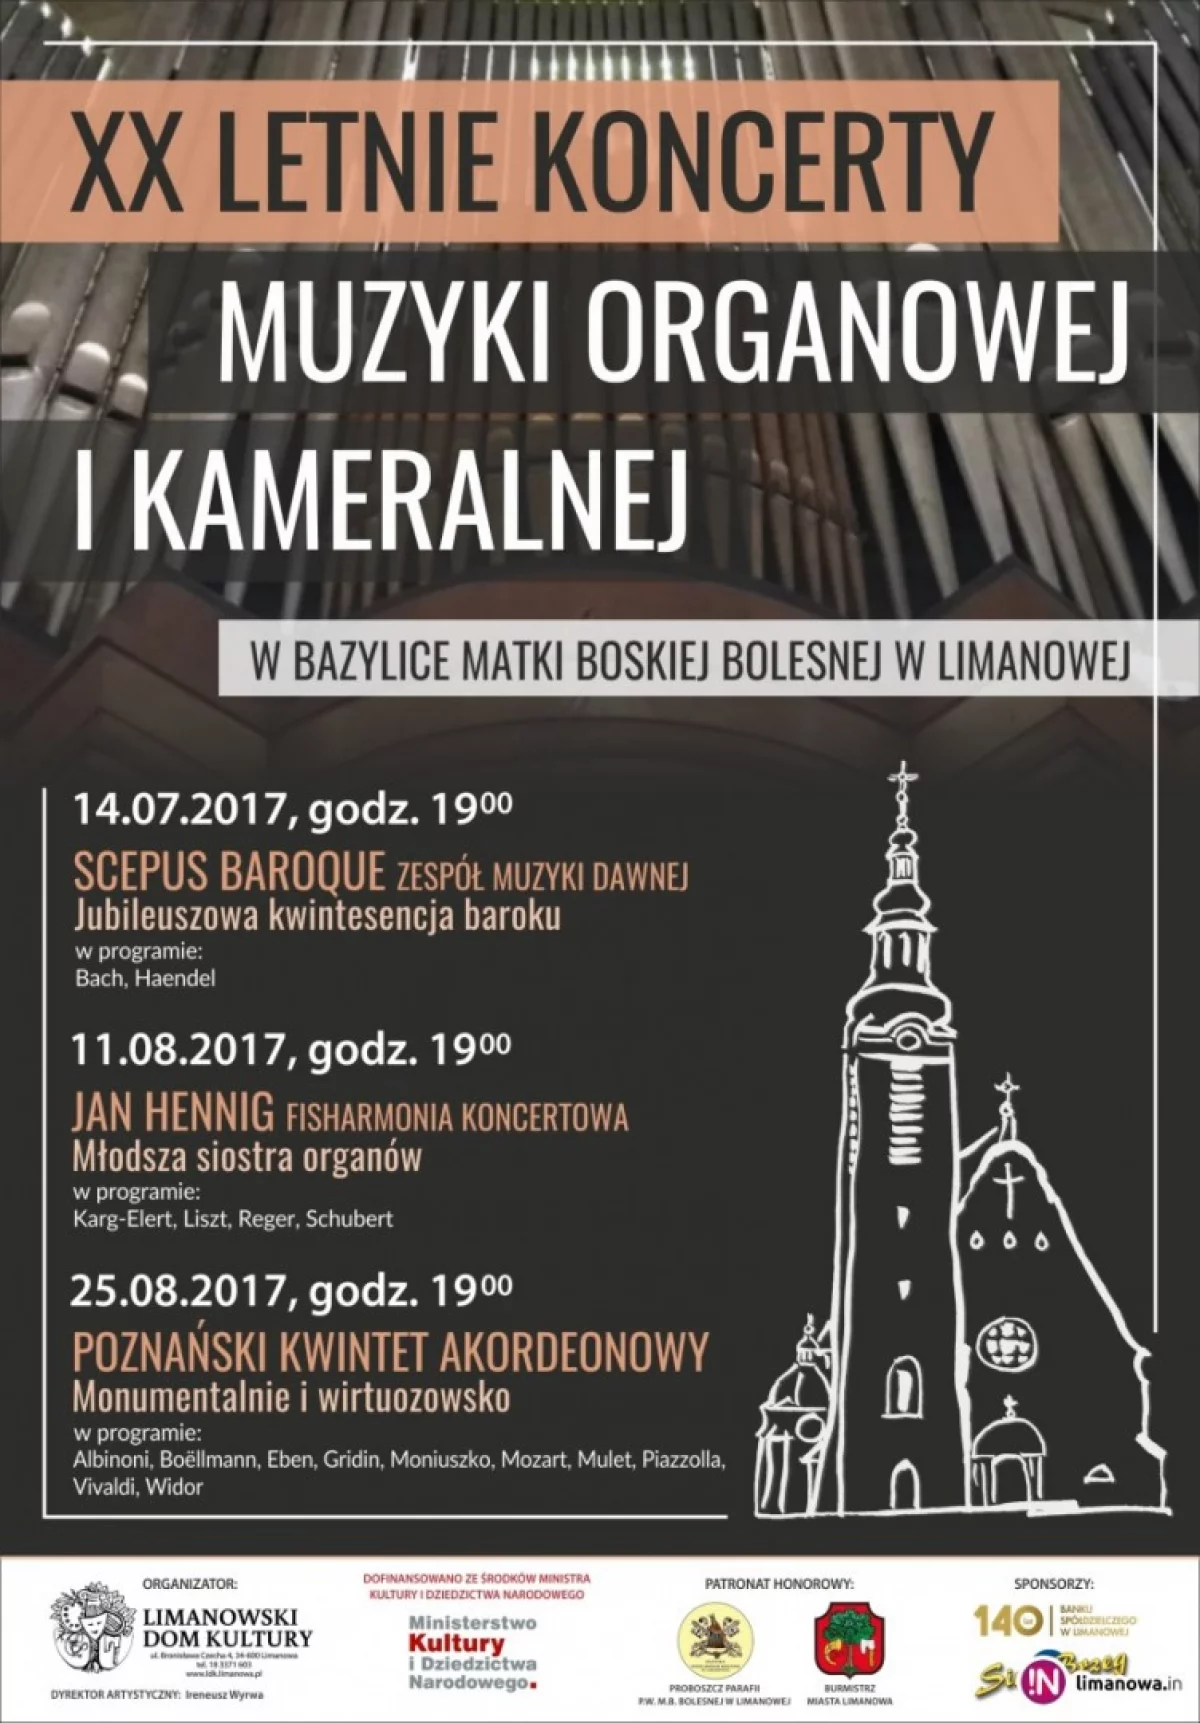 XX Letnie Koncerty Muzyki Organowej i Kameralnej - program